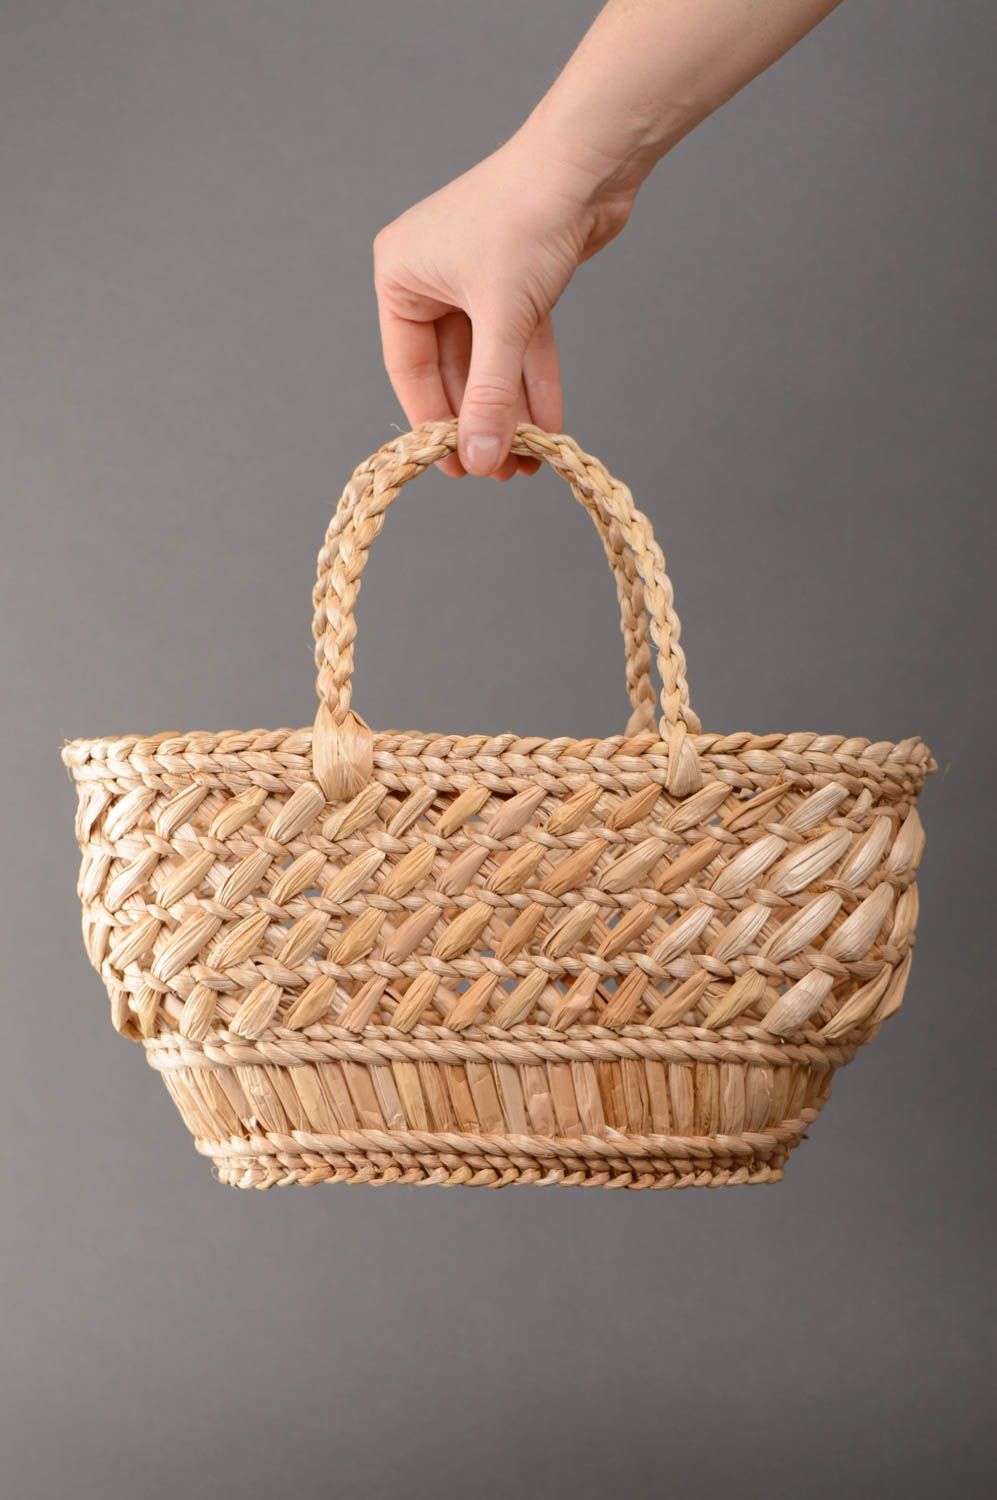 Unusual reedmace basket purse photo 5